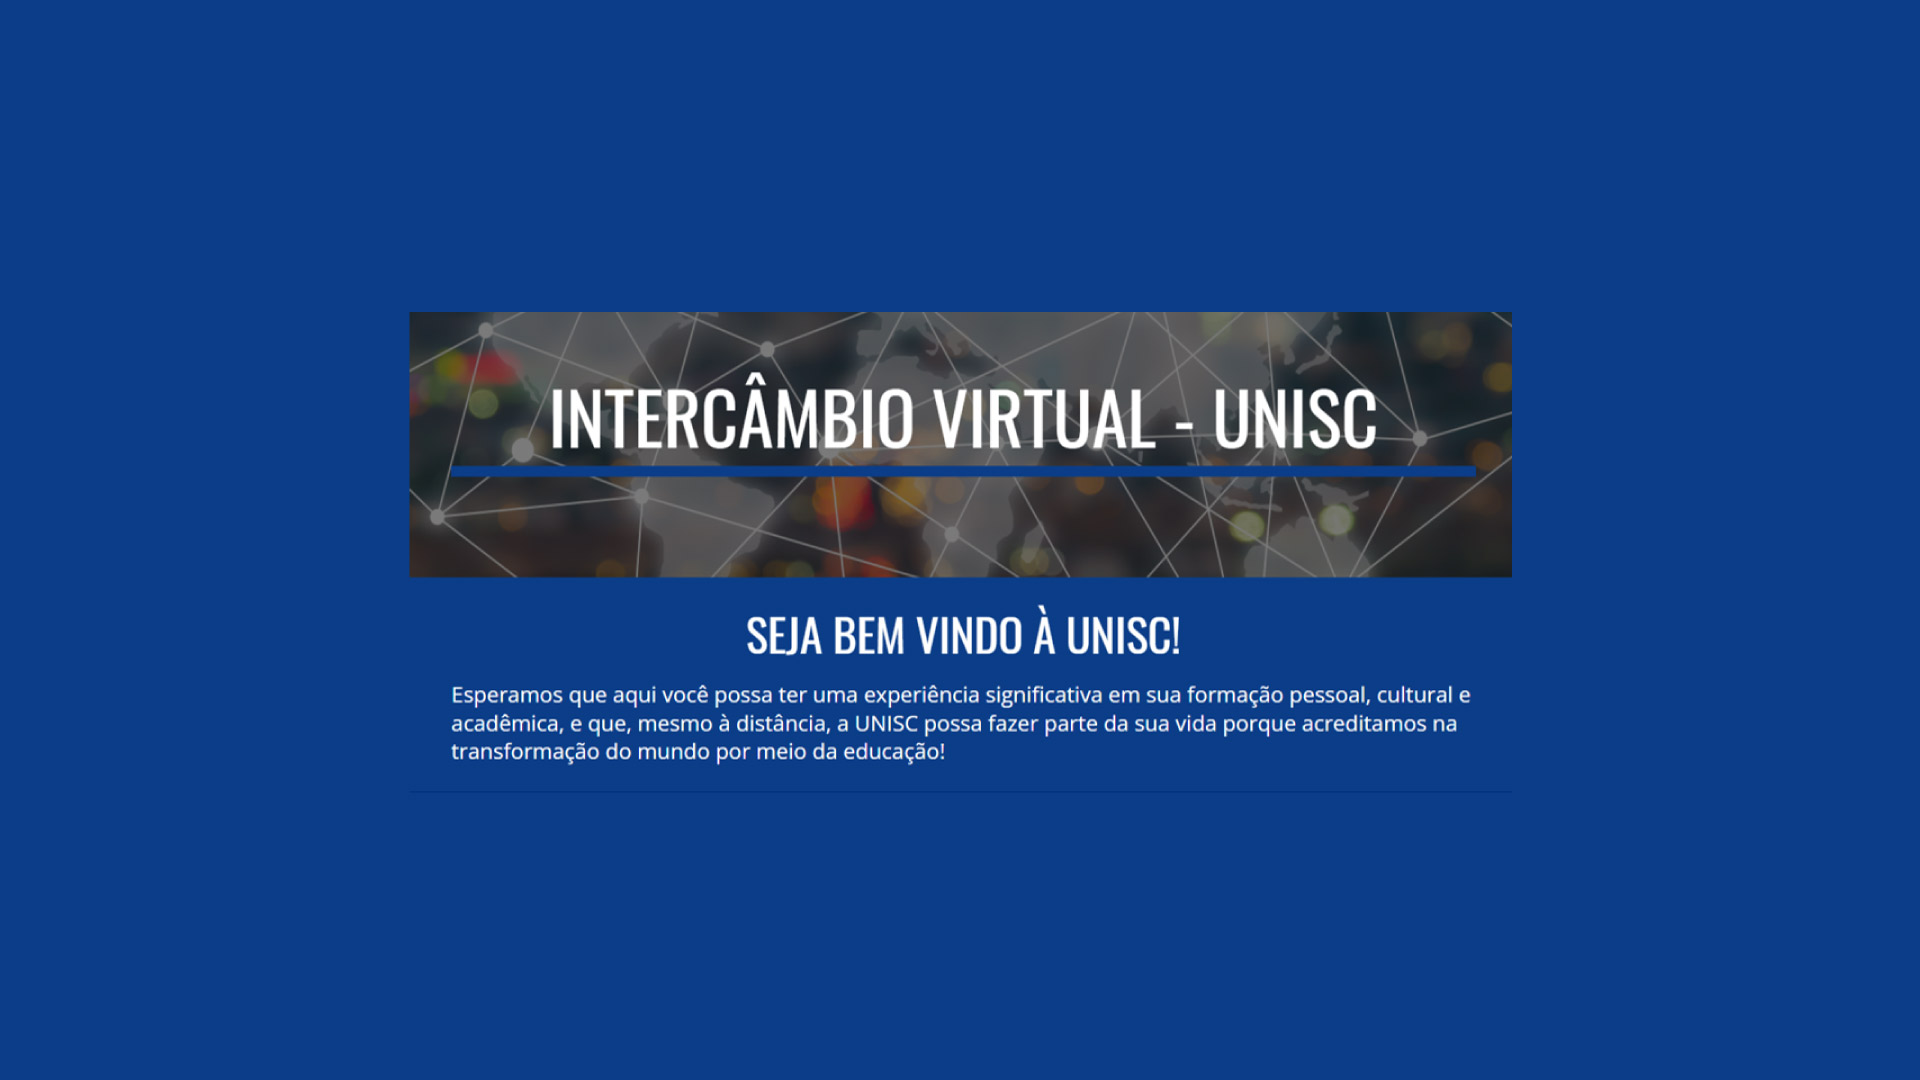 URII | A tu lado conocemos culturas | Abierta convocatoria para intercambio virtual a la UNISC en Brasil